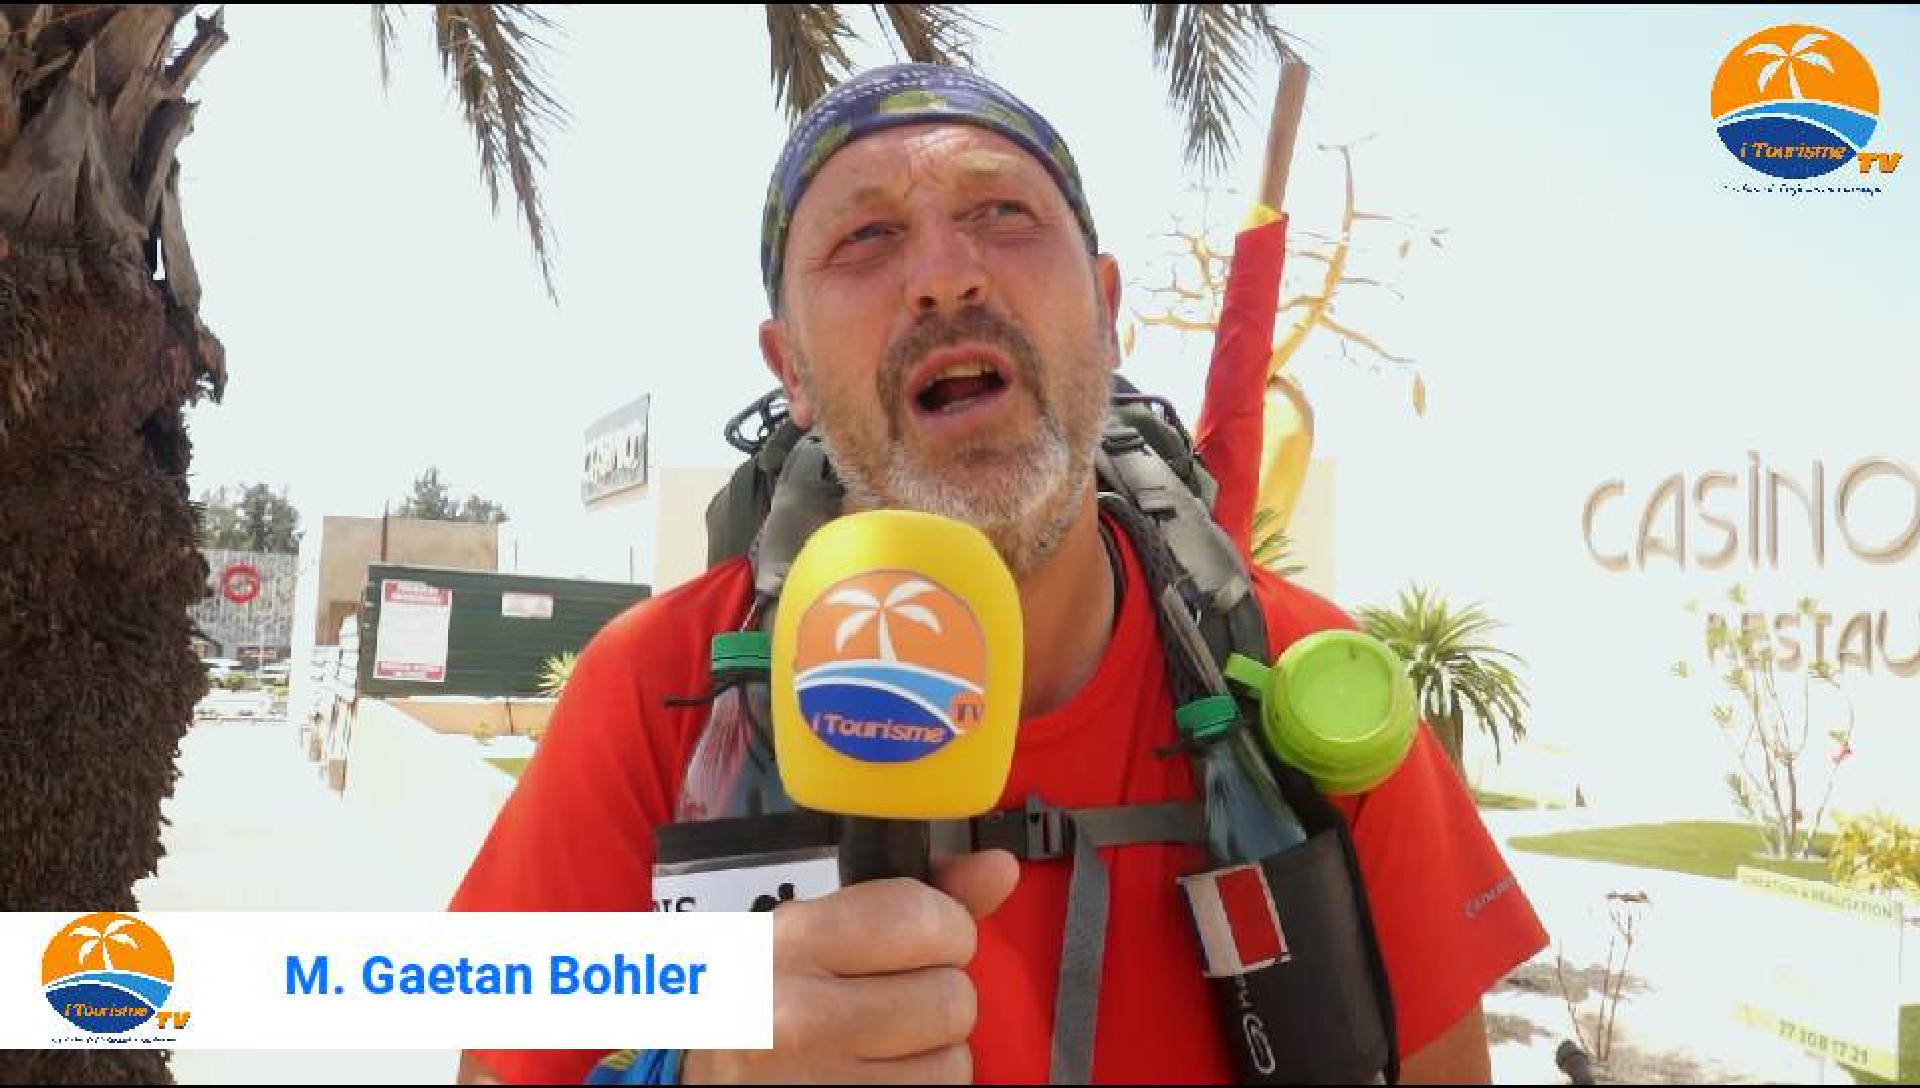 Paris Dakar Ã  pied: Gaetan Bohler a reliÃ© les deux capitales en 231 jours soit une distance de 7000 km